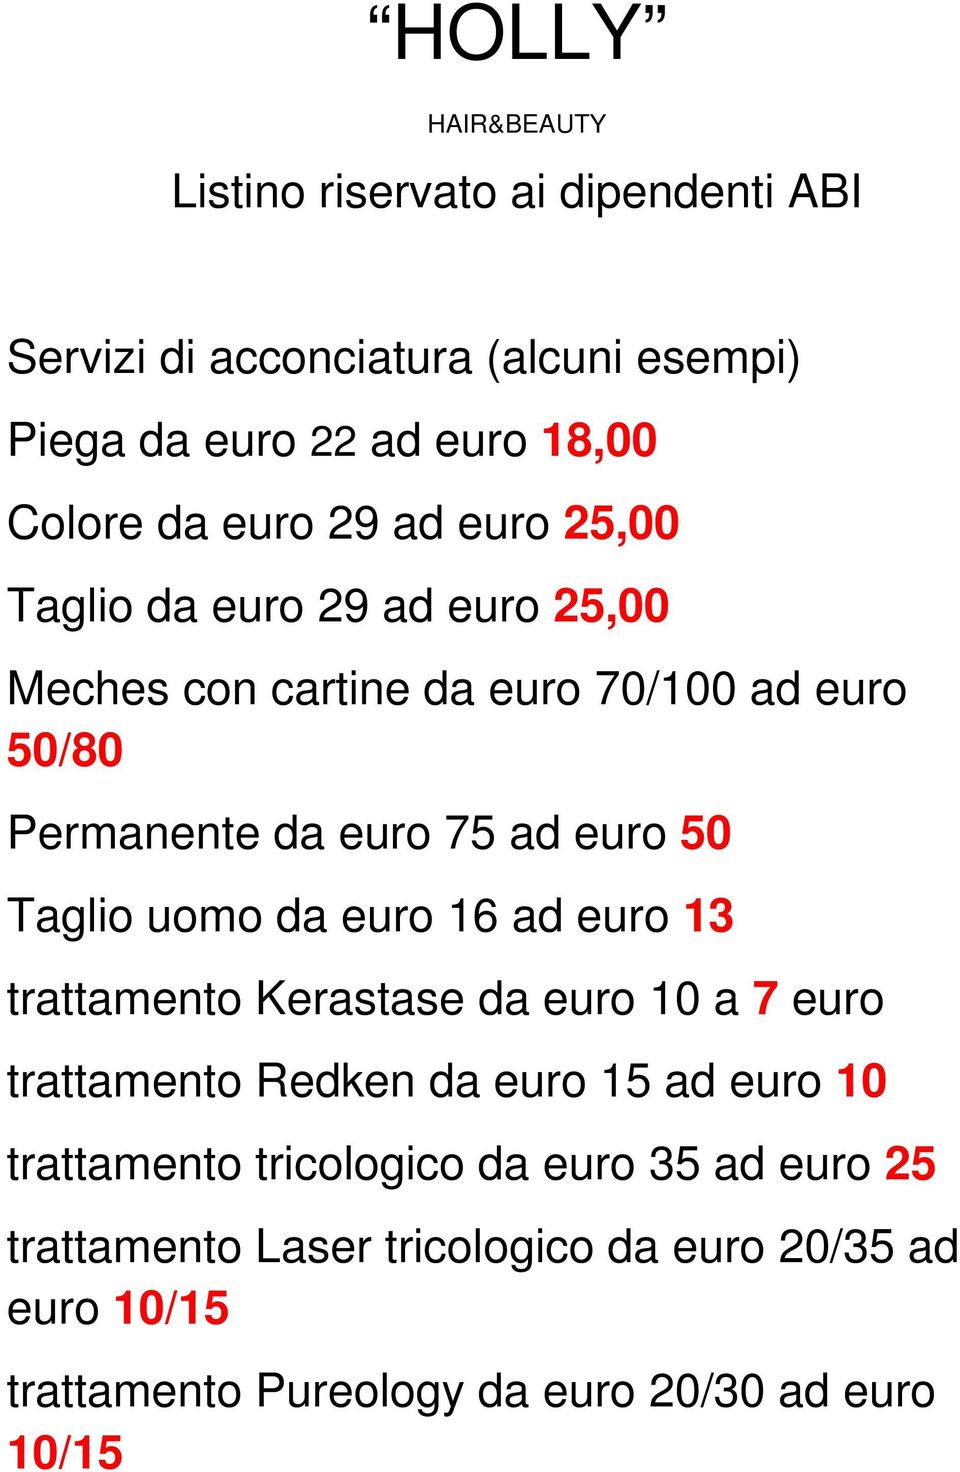 Taglio uomo da euro 16 ad euro 13 trattamento Kerastase da euro 10 a 7 euro trattamento Redken da euro 15 ad euro 10 trattamento